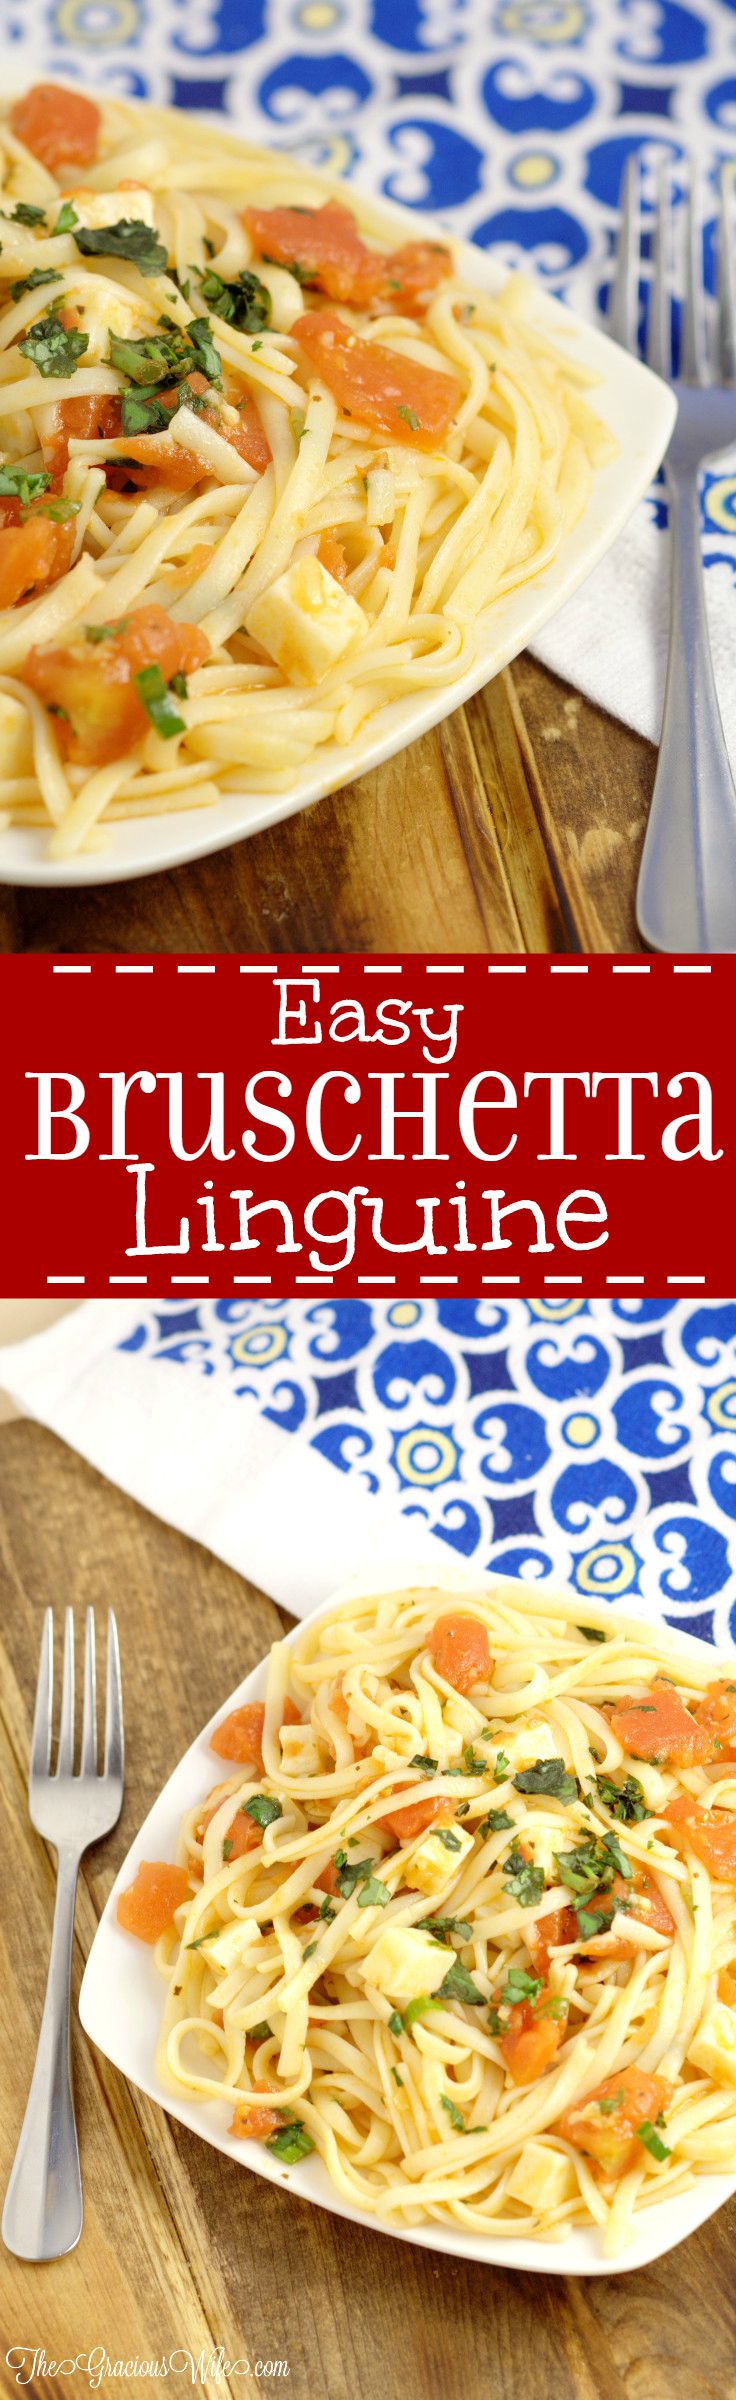 Easy Bruschetta Linguine Pasta Recipe - an easy pasta dinner idea recipe with tomatoes, garlic, basil, and mozzarella. Super easy and super delicious!